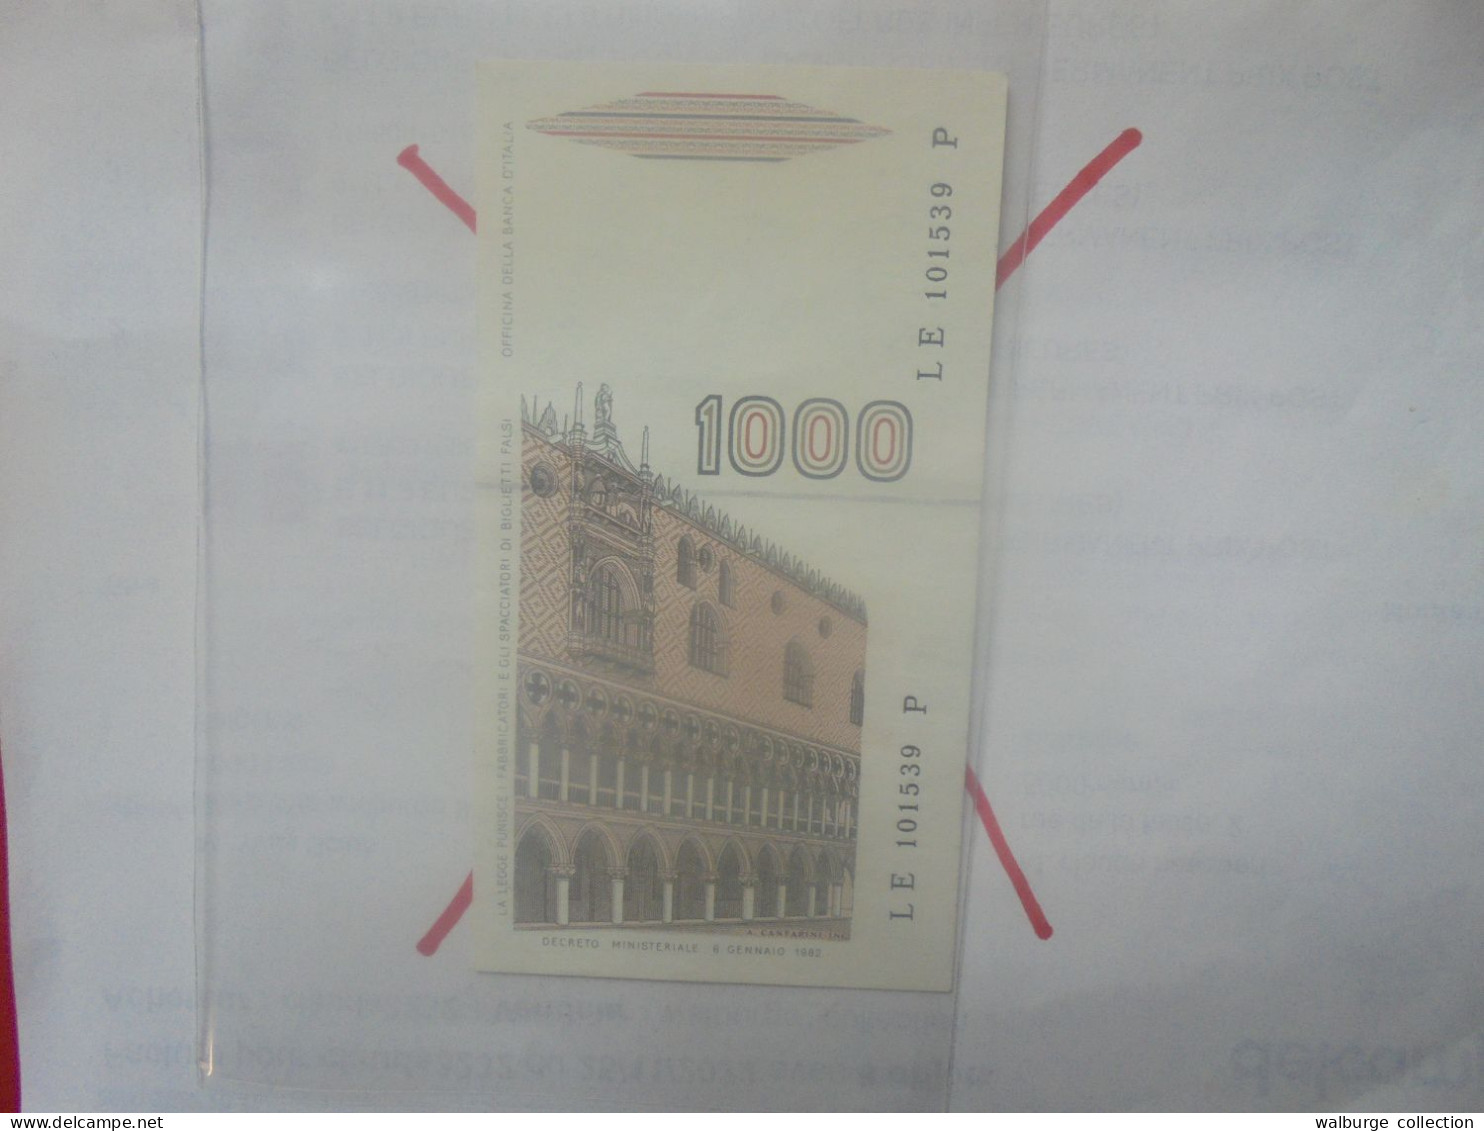 ITALIE 1000 LIRE 1982 Neuf (B.33) - 1000 Liras